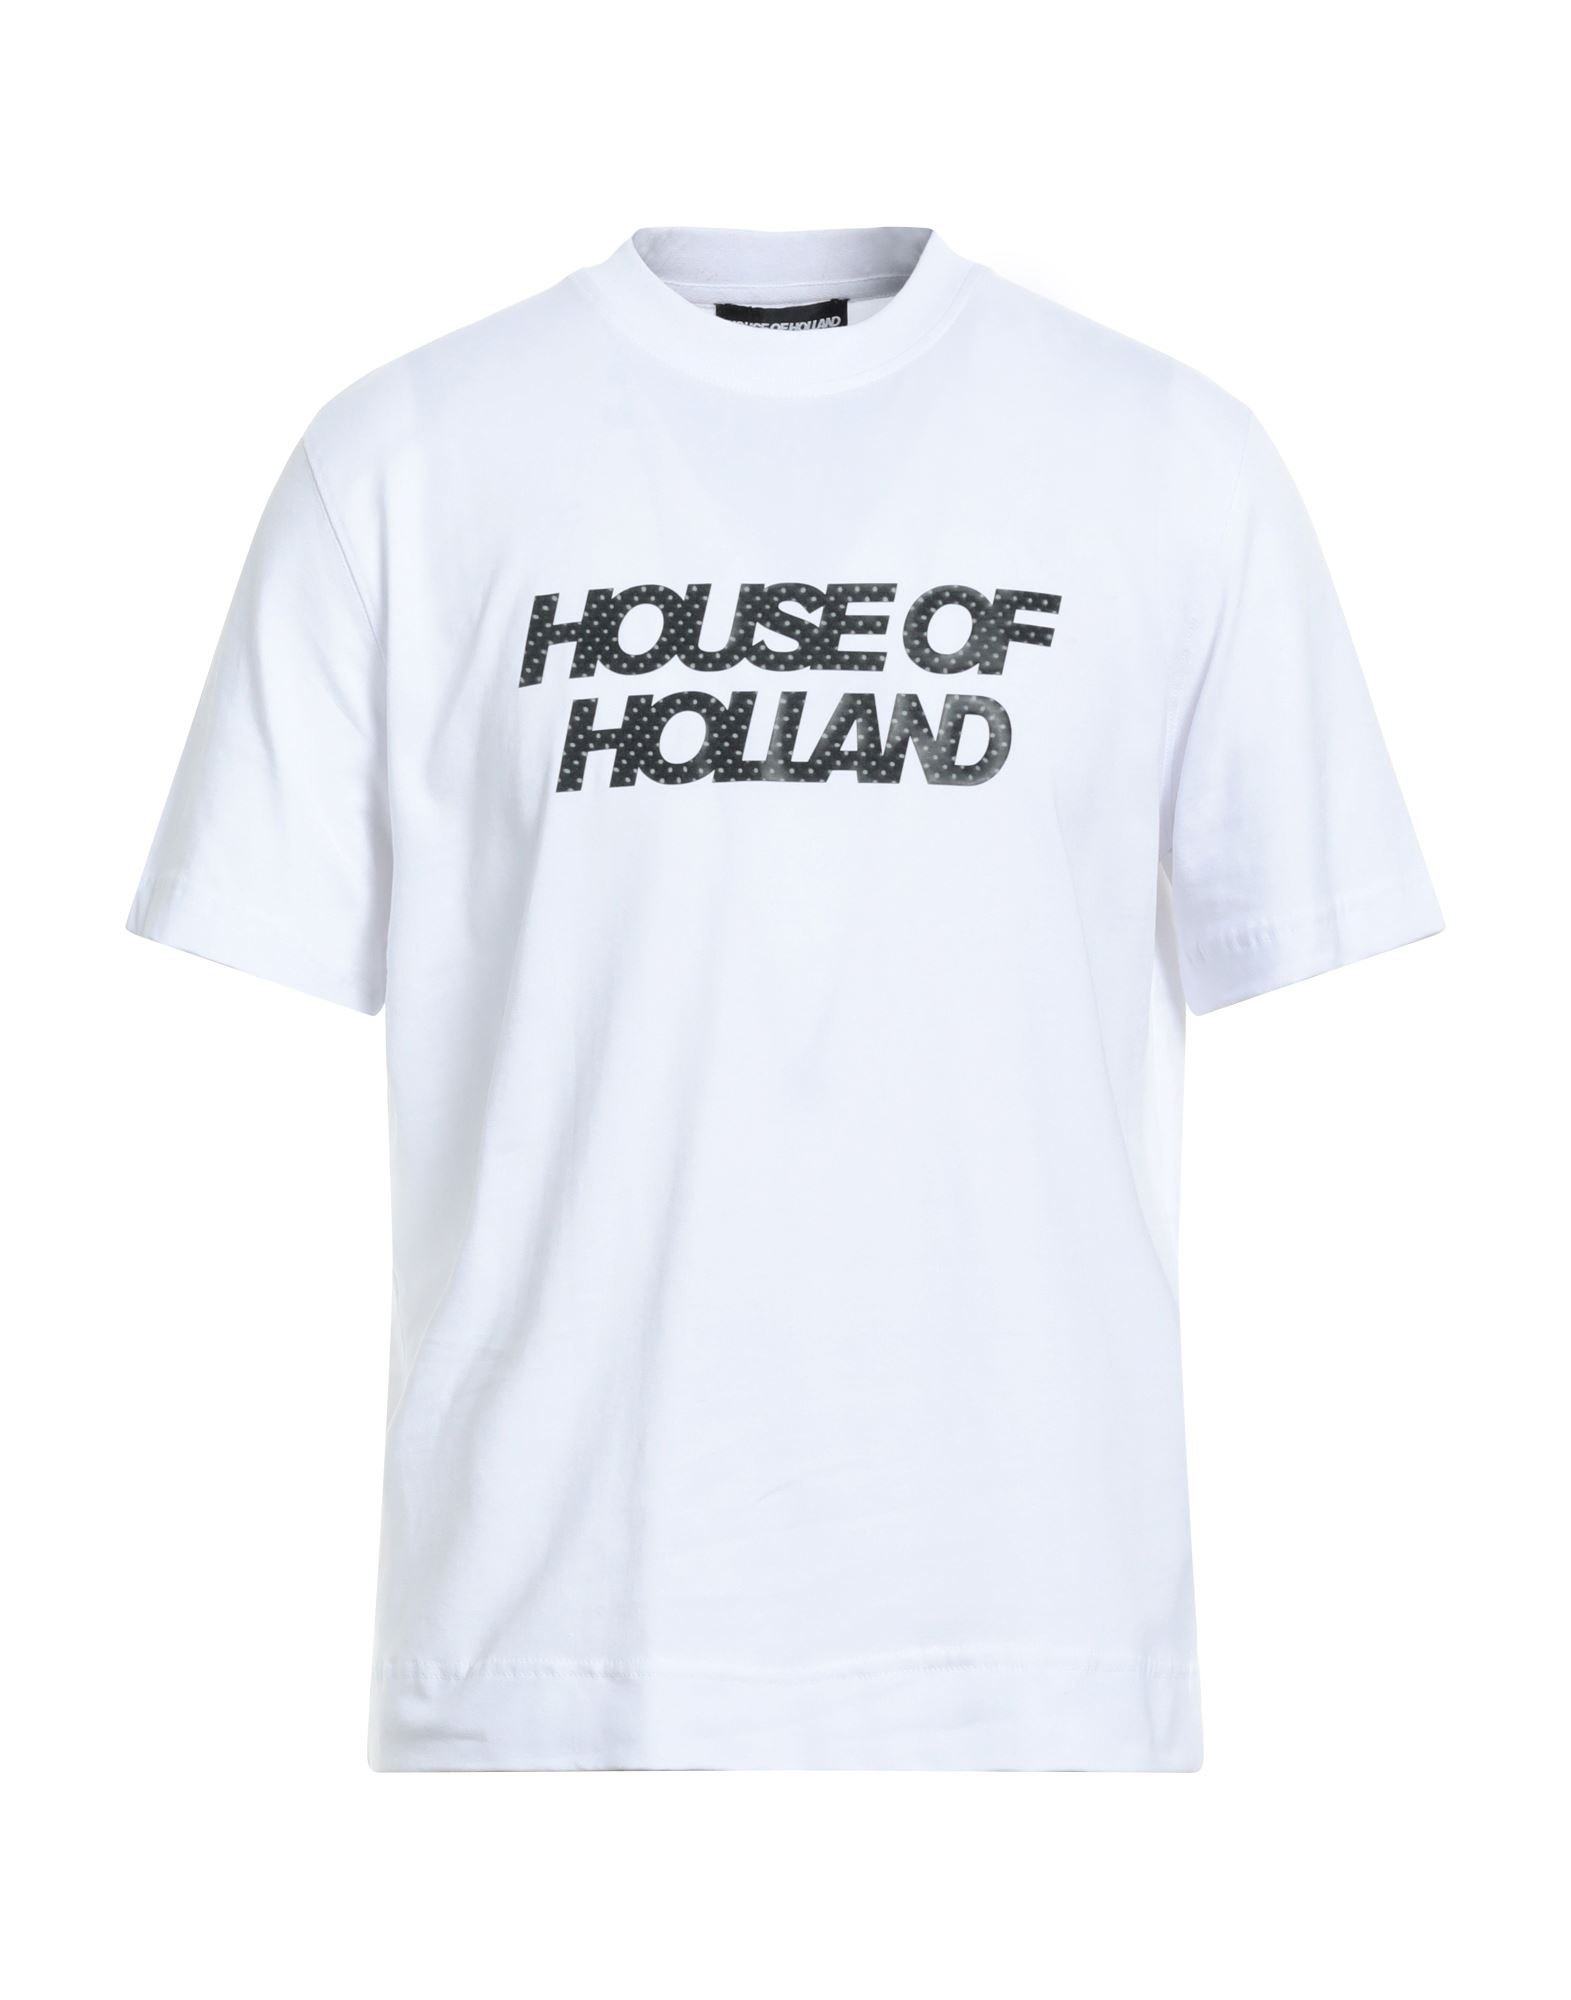 HOUSE OF HOLLAND T-shirts Herren Weiß von HOUSE OF HOLLAND